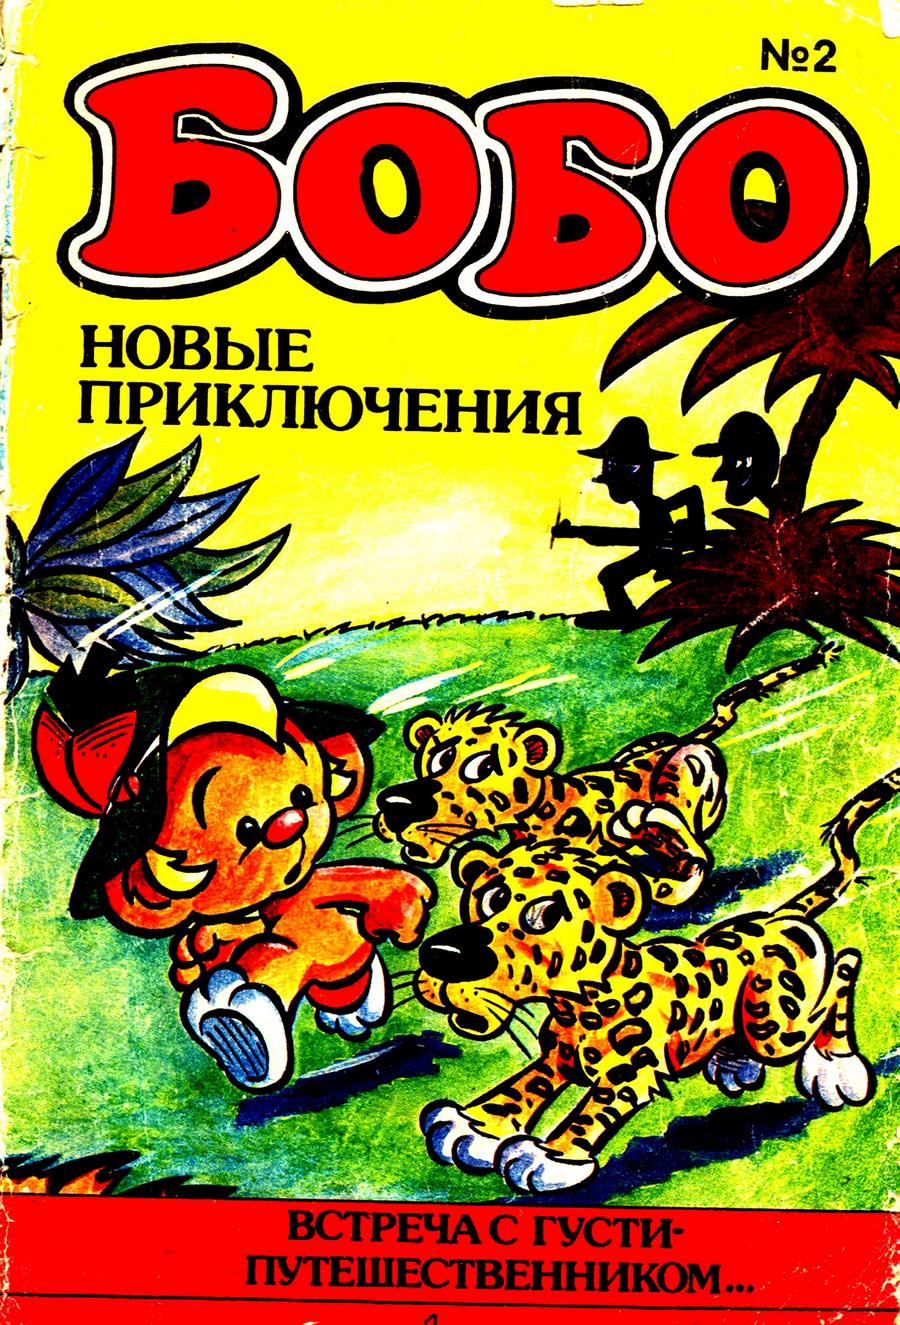 Читать комиксы Бобо 1992